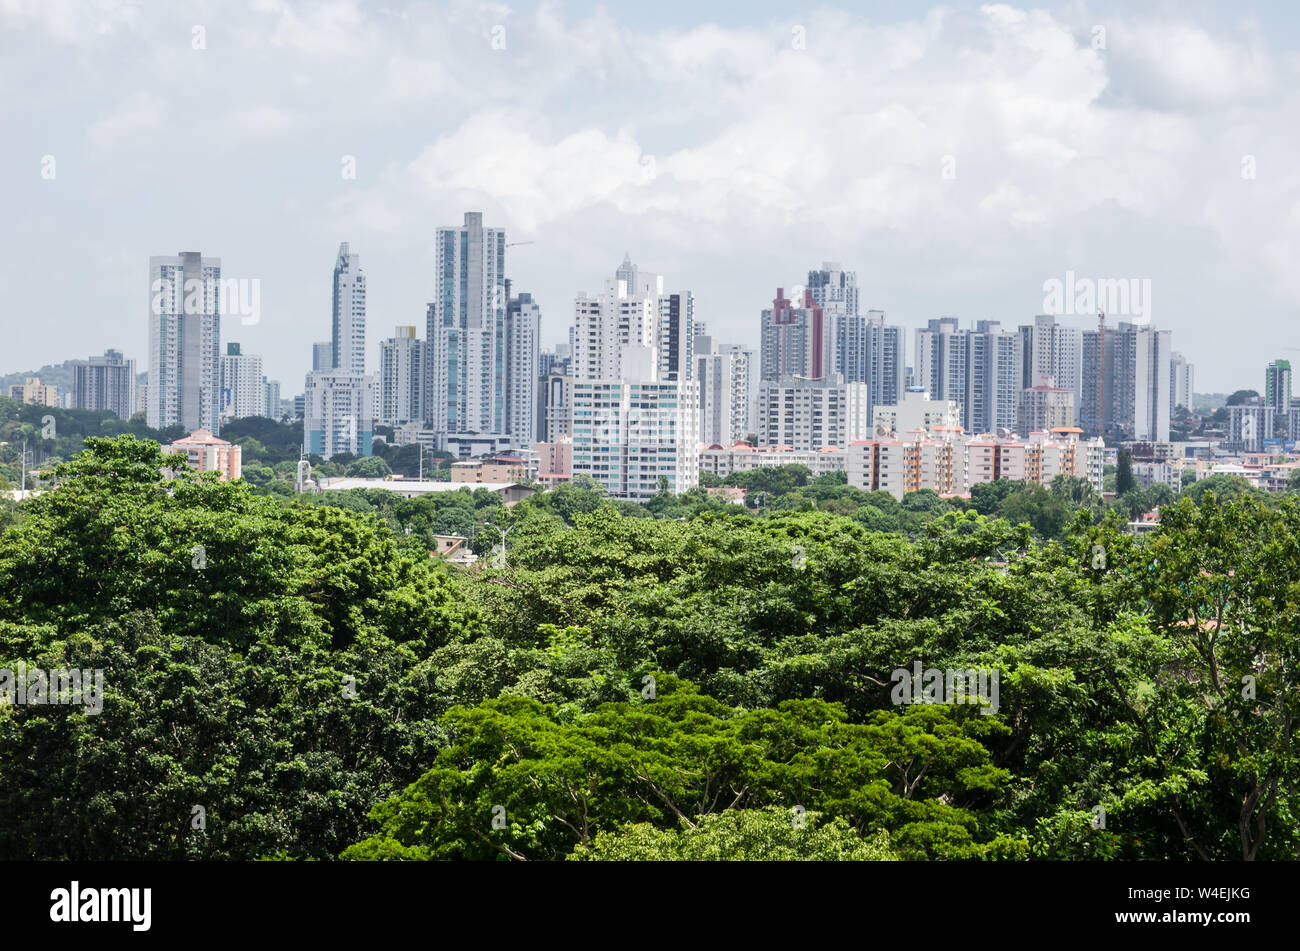 Panama City skyline Stock Photo